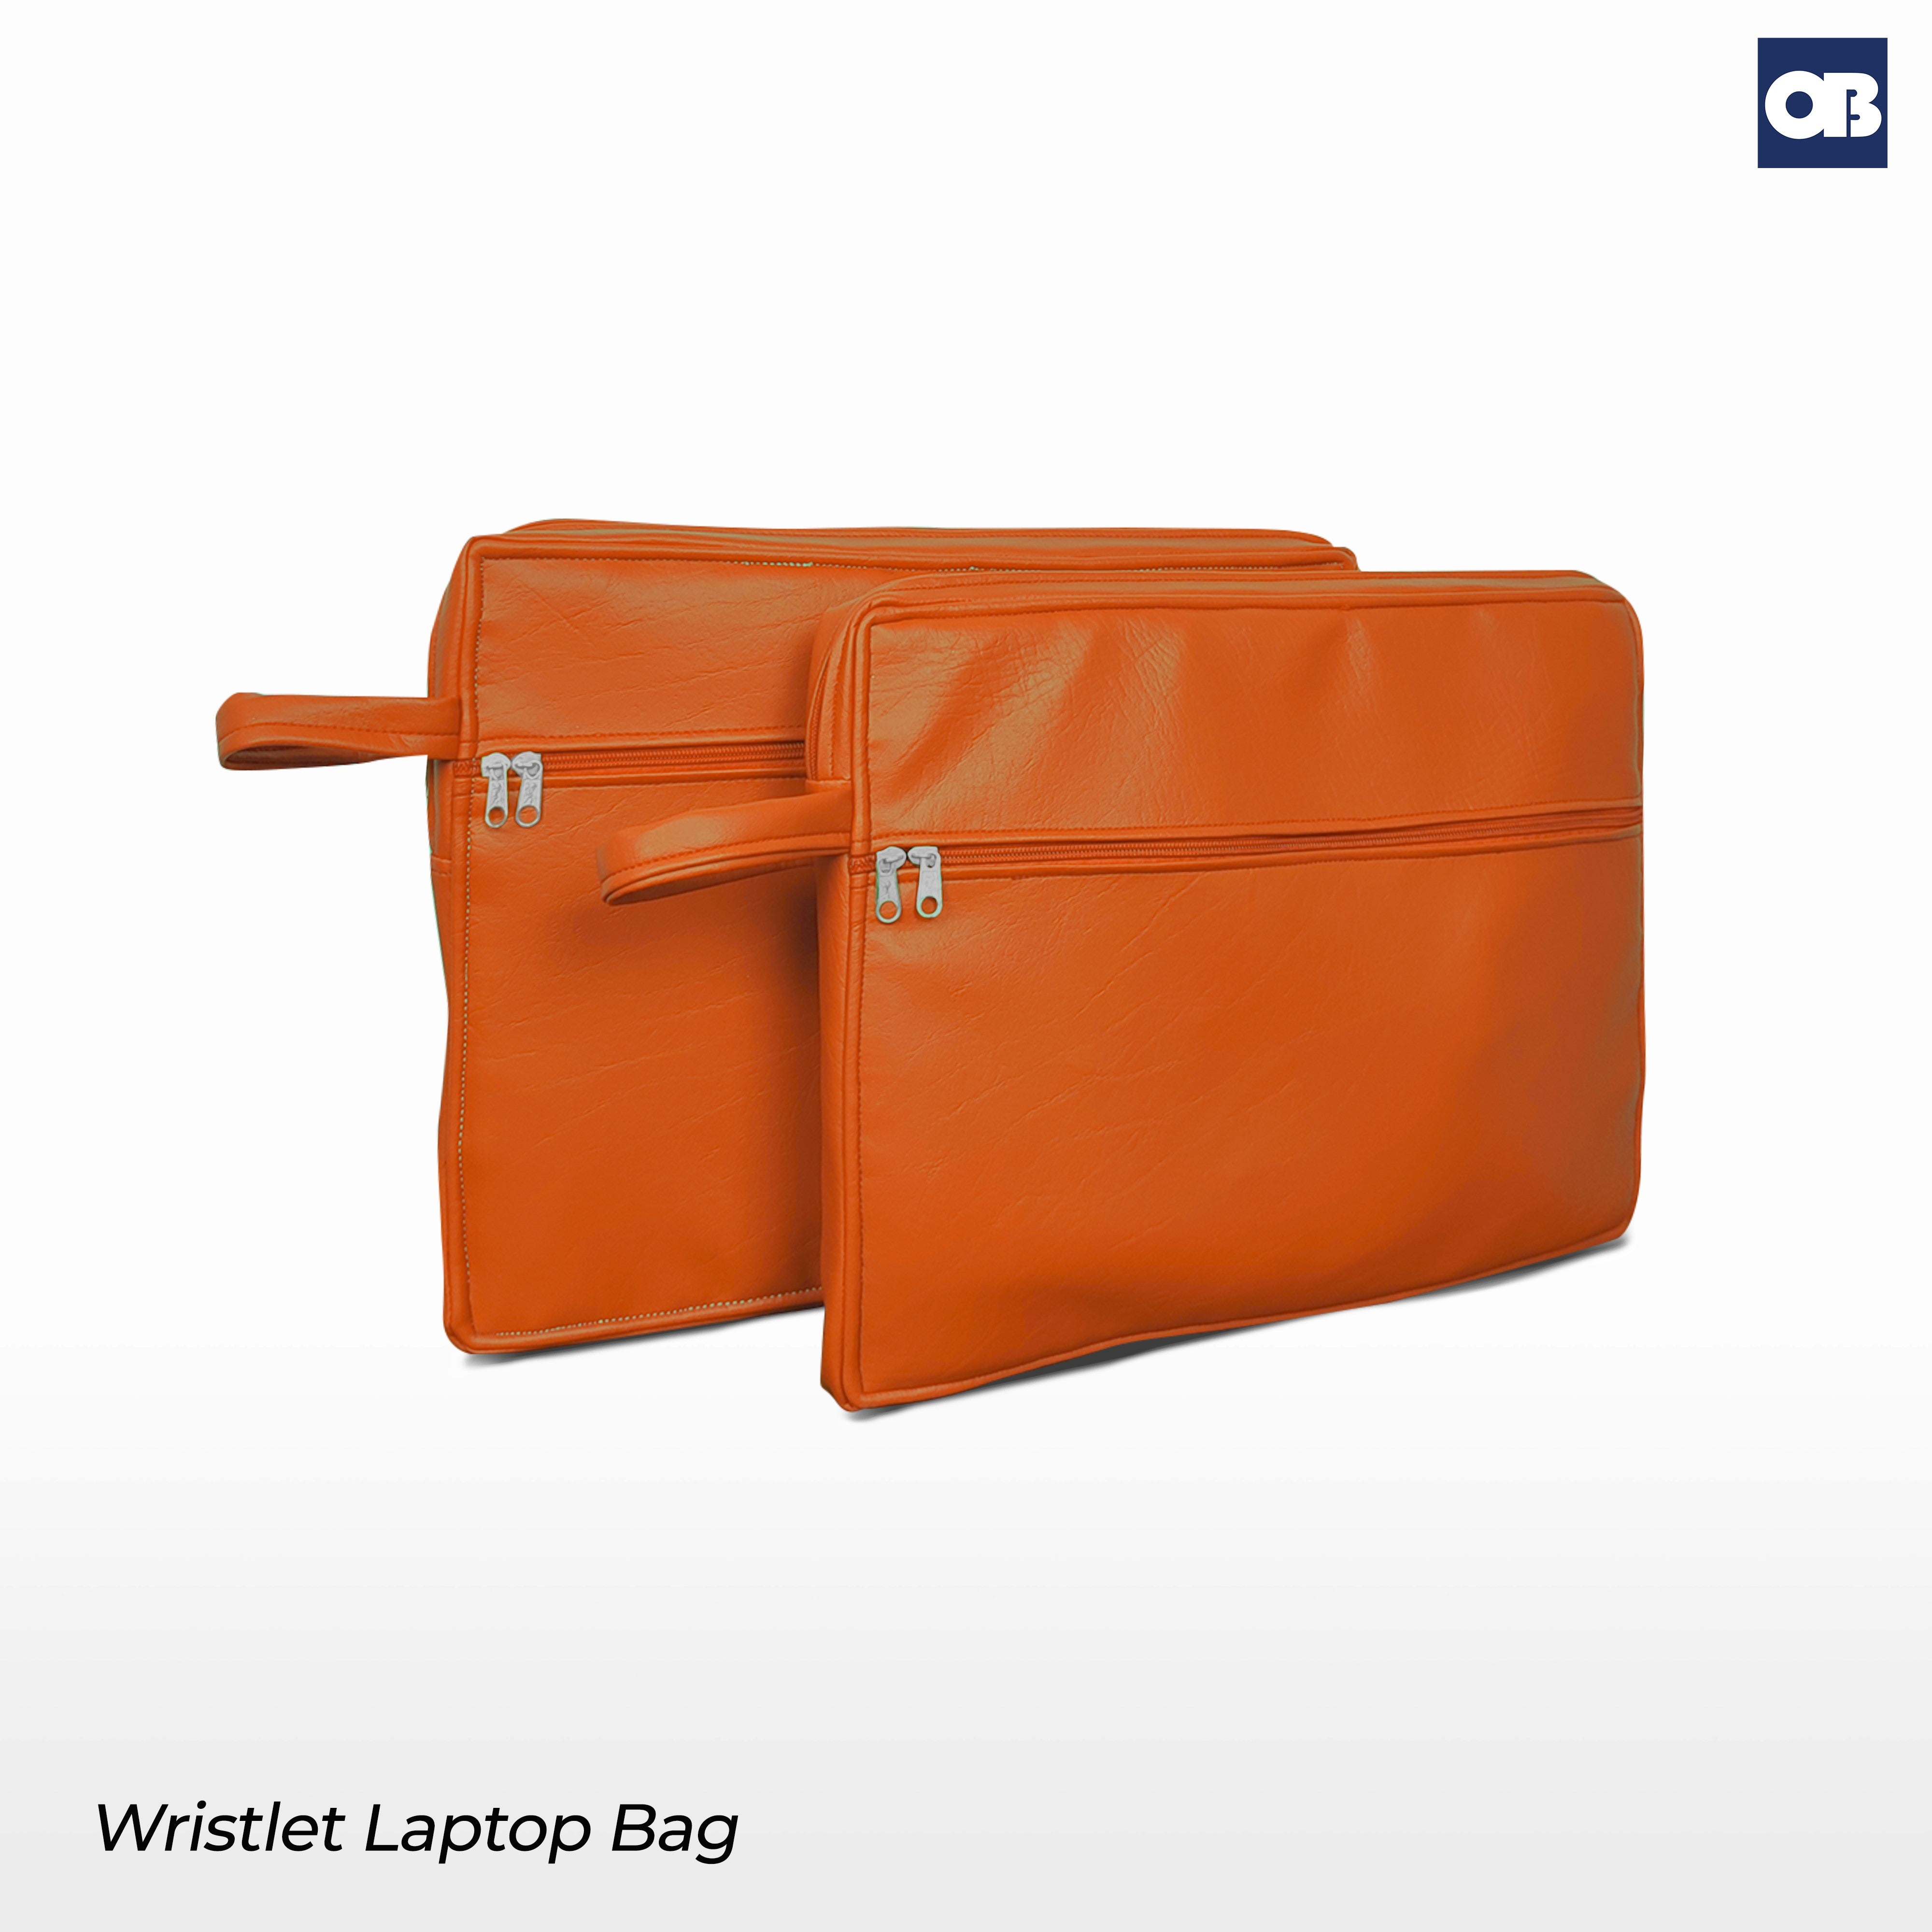 OB Wristlet Laptop Bag